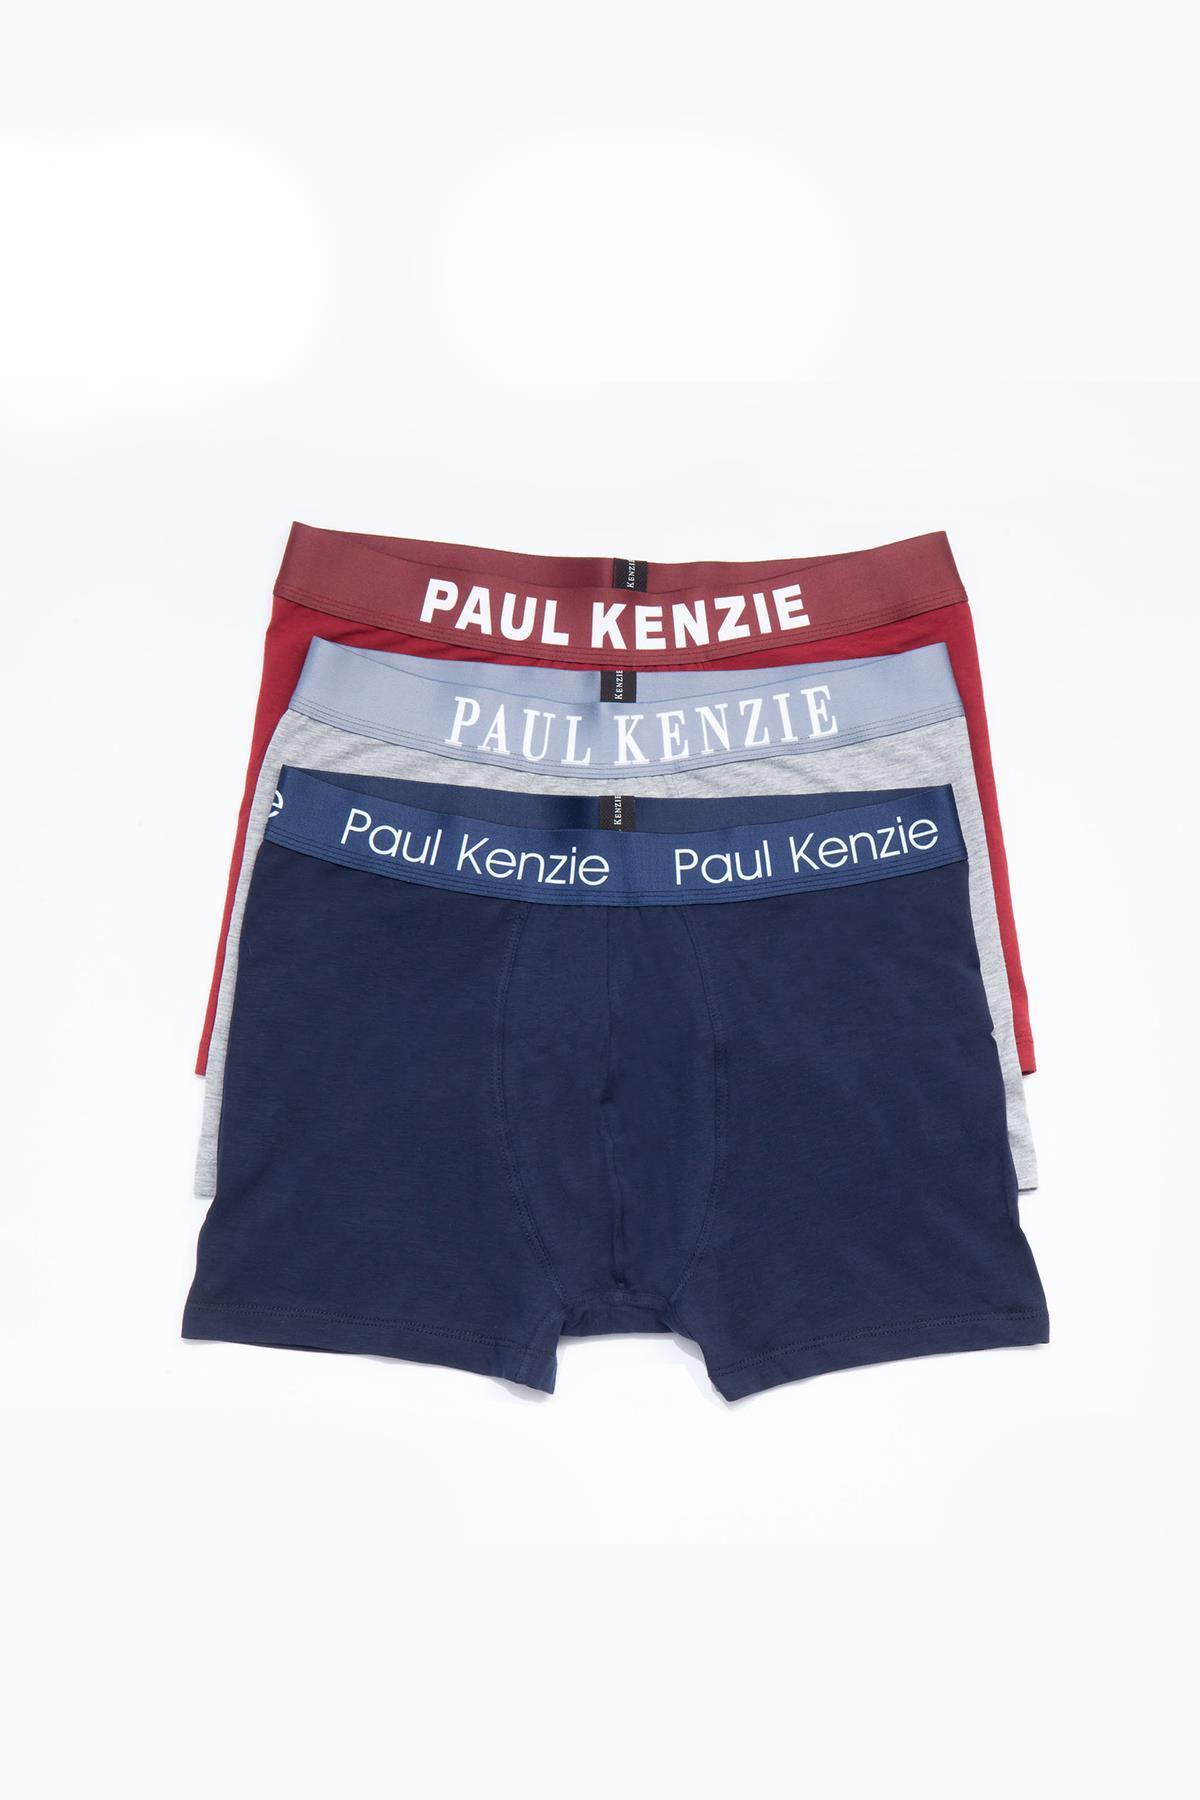 Aquarella Erkek Boxer 3 Adet - Paul Kenzie